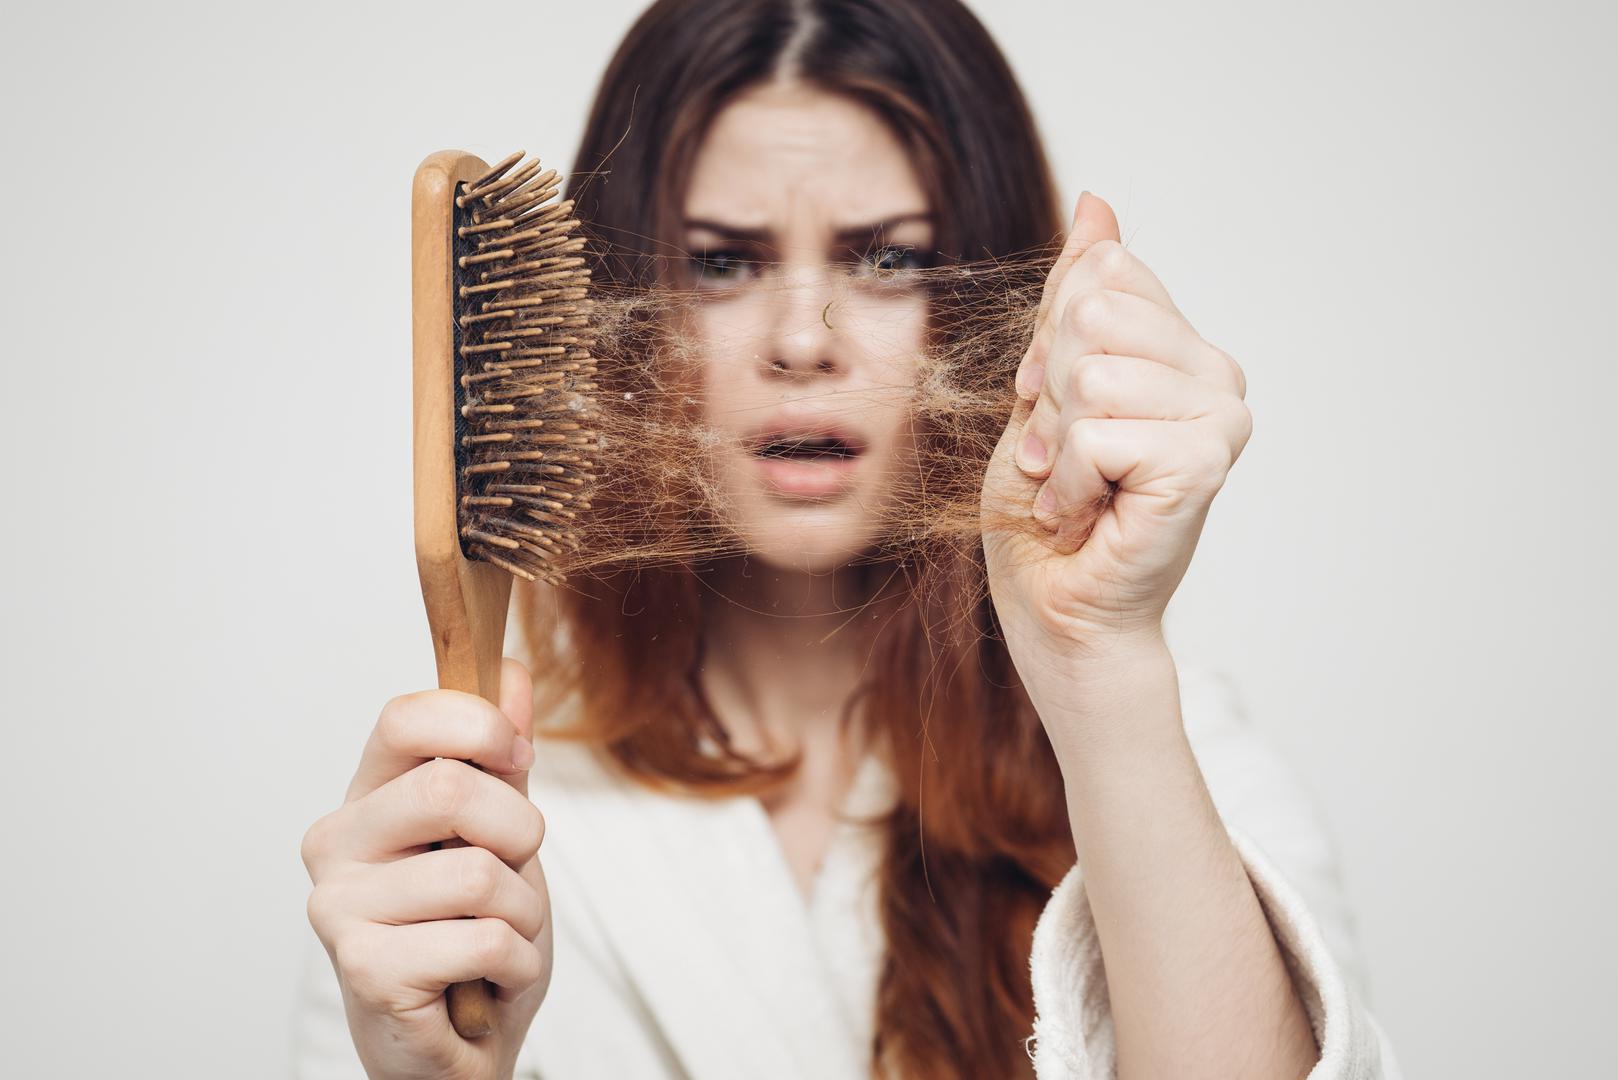 Iako je normalno izgubiti između 50 i 100 vlasi dnevno, ponekad gubitak kose može ukazivati na zdravstvene probleme poput nedostatka željeza. Ukoliko ste zabrinuti u vezi gubitka kose, preporučljivo je konzultirati se s vašim liječnikom opće prakse.